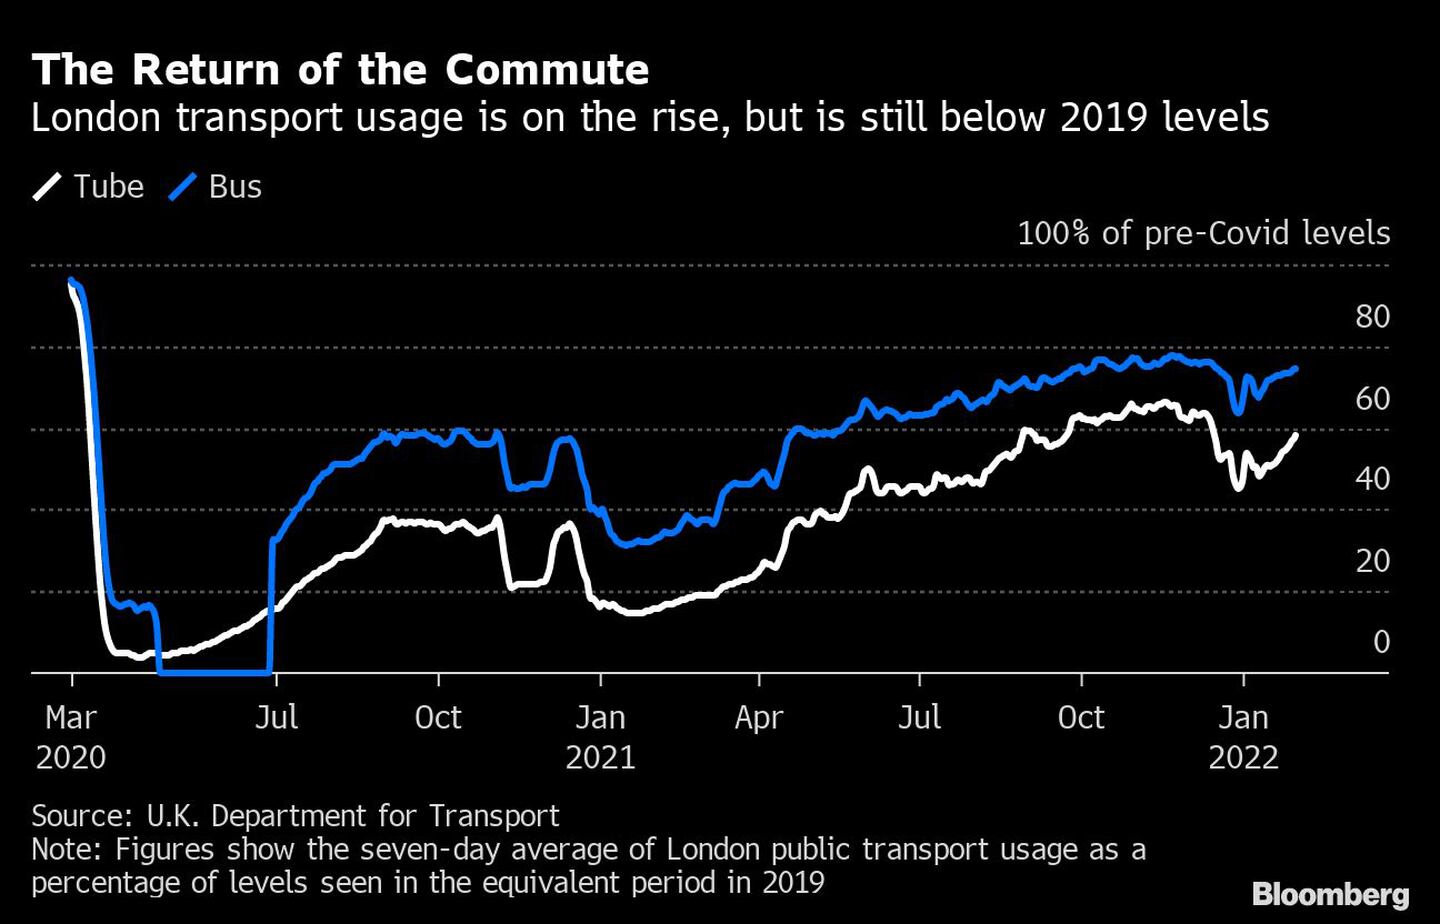 El regreso de los desplazamientos al trabajo
El uso del transporte londinense aumenta, pero aún está por debajo de los niveles de 2019
Blanco: Tren
Azul: autobusdfd